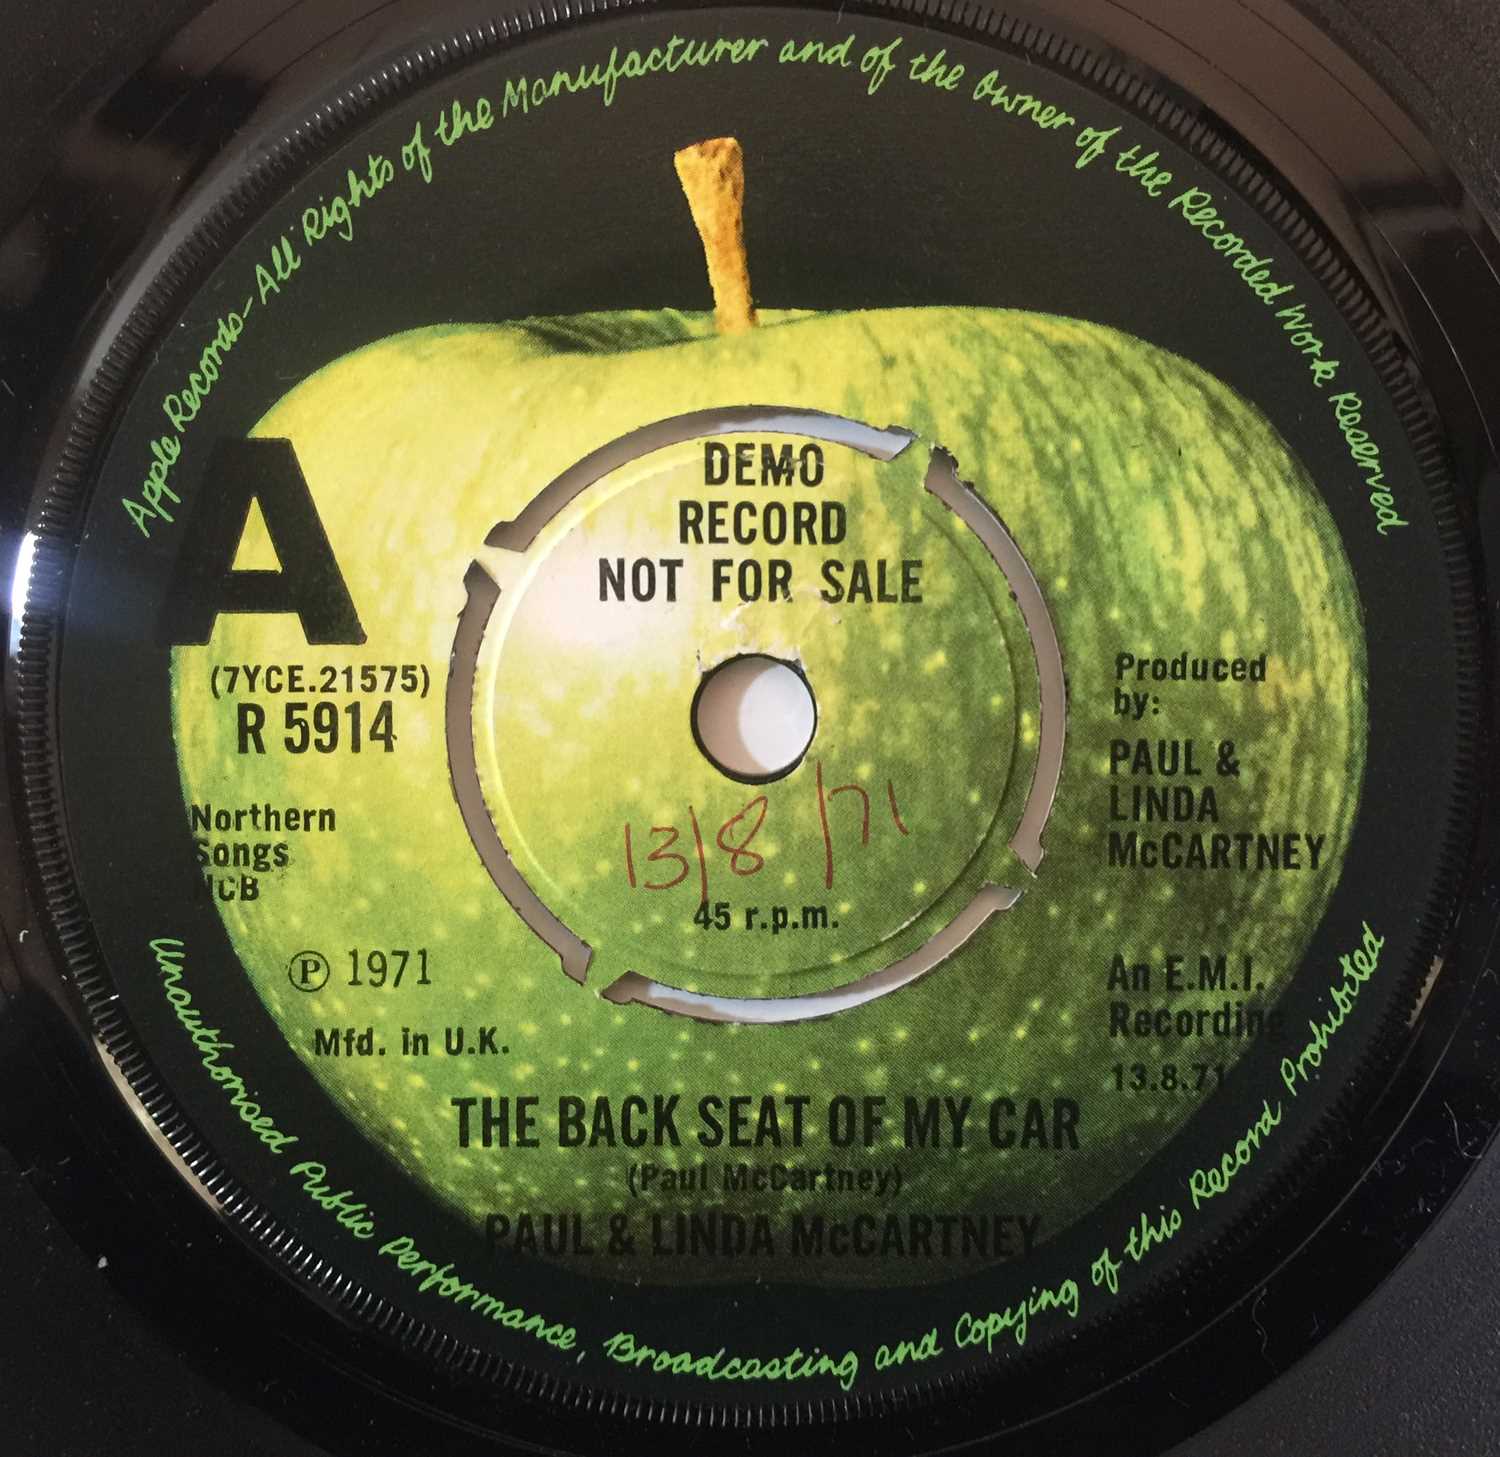 Paul & Linda McCartney - The Back Seat Of My Car 7" (Original UK Demo - Apple R 5914) - Image 2 of 3